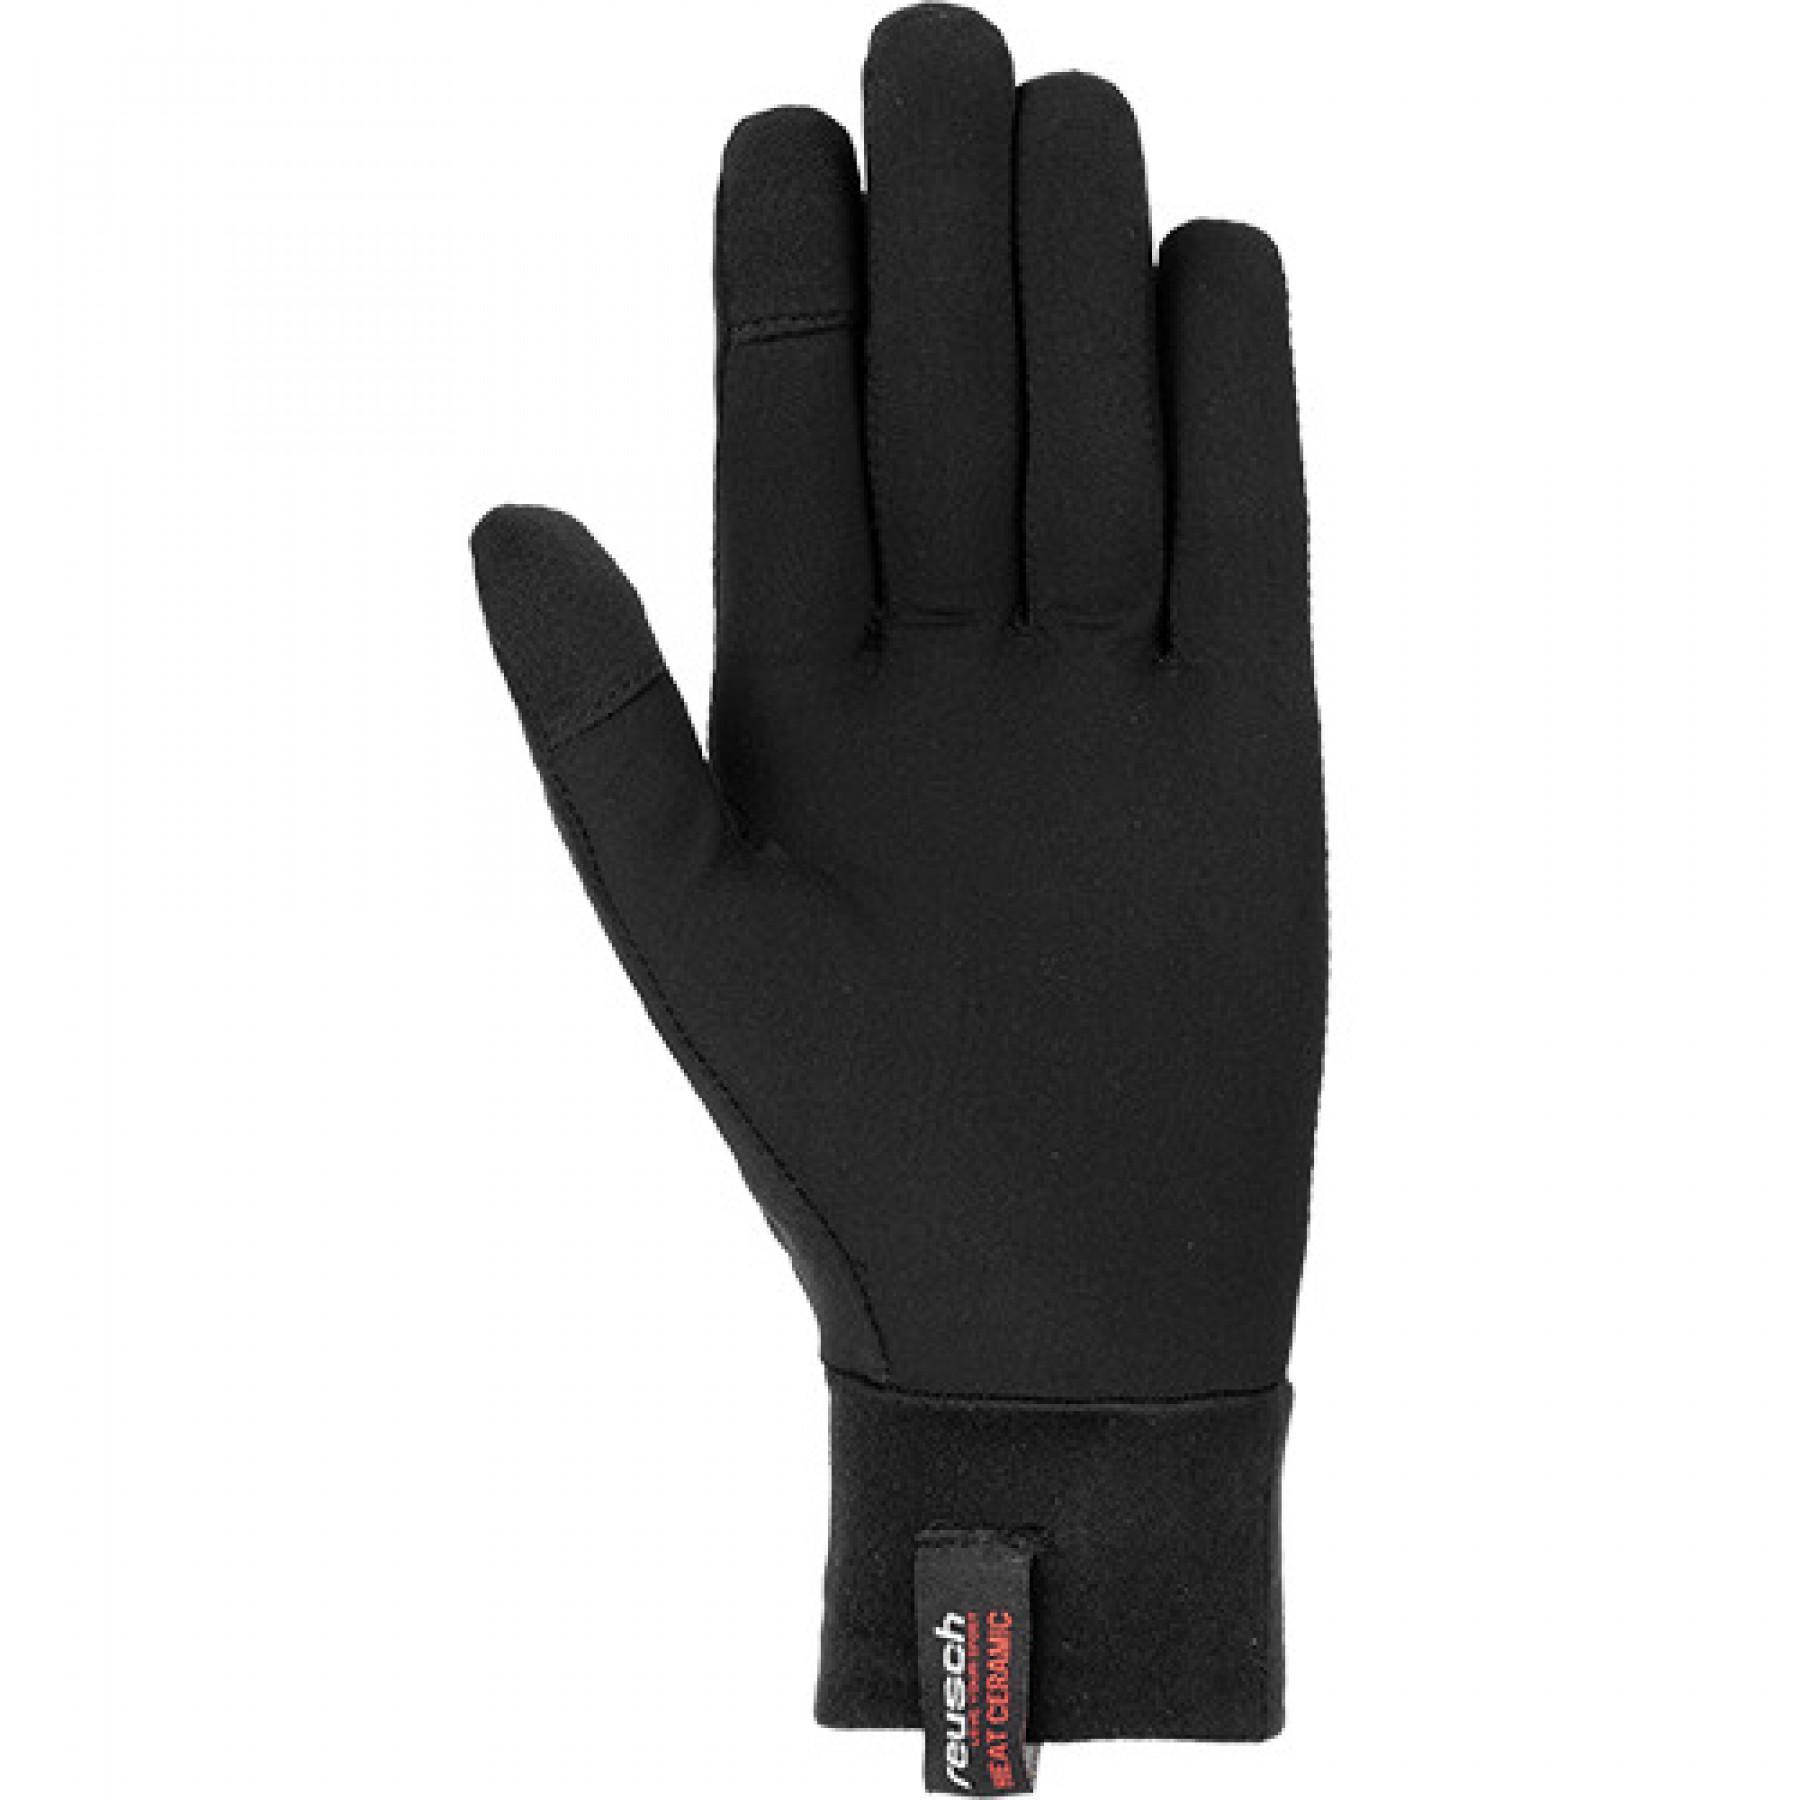 Handschuhe Reusch Vertex Heat Ceramic Touch-tec